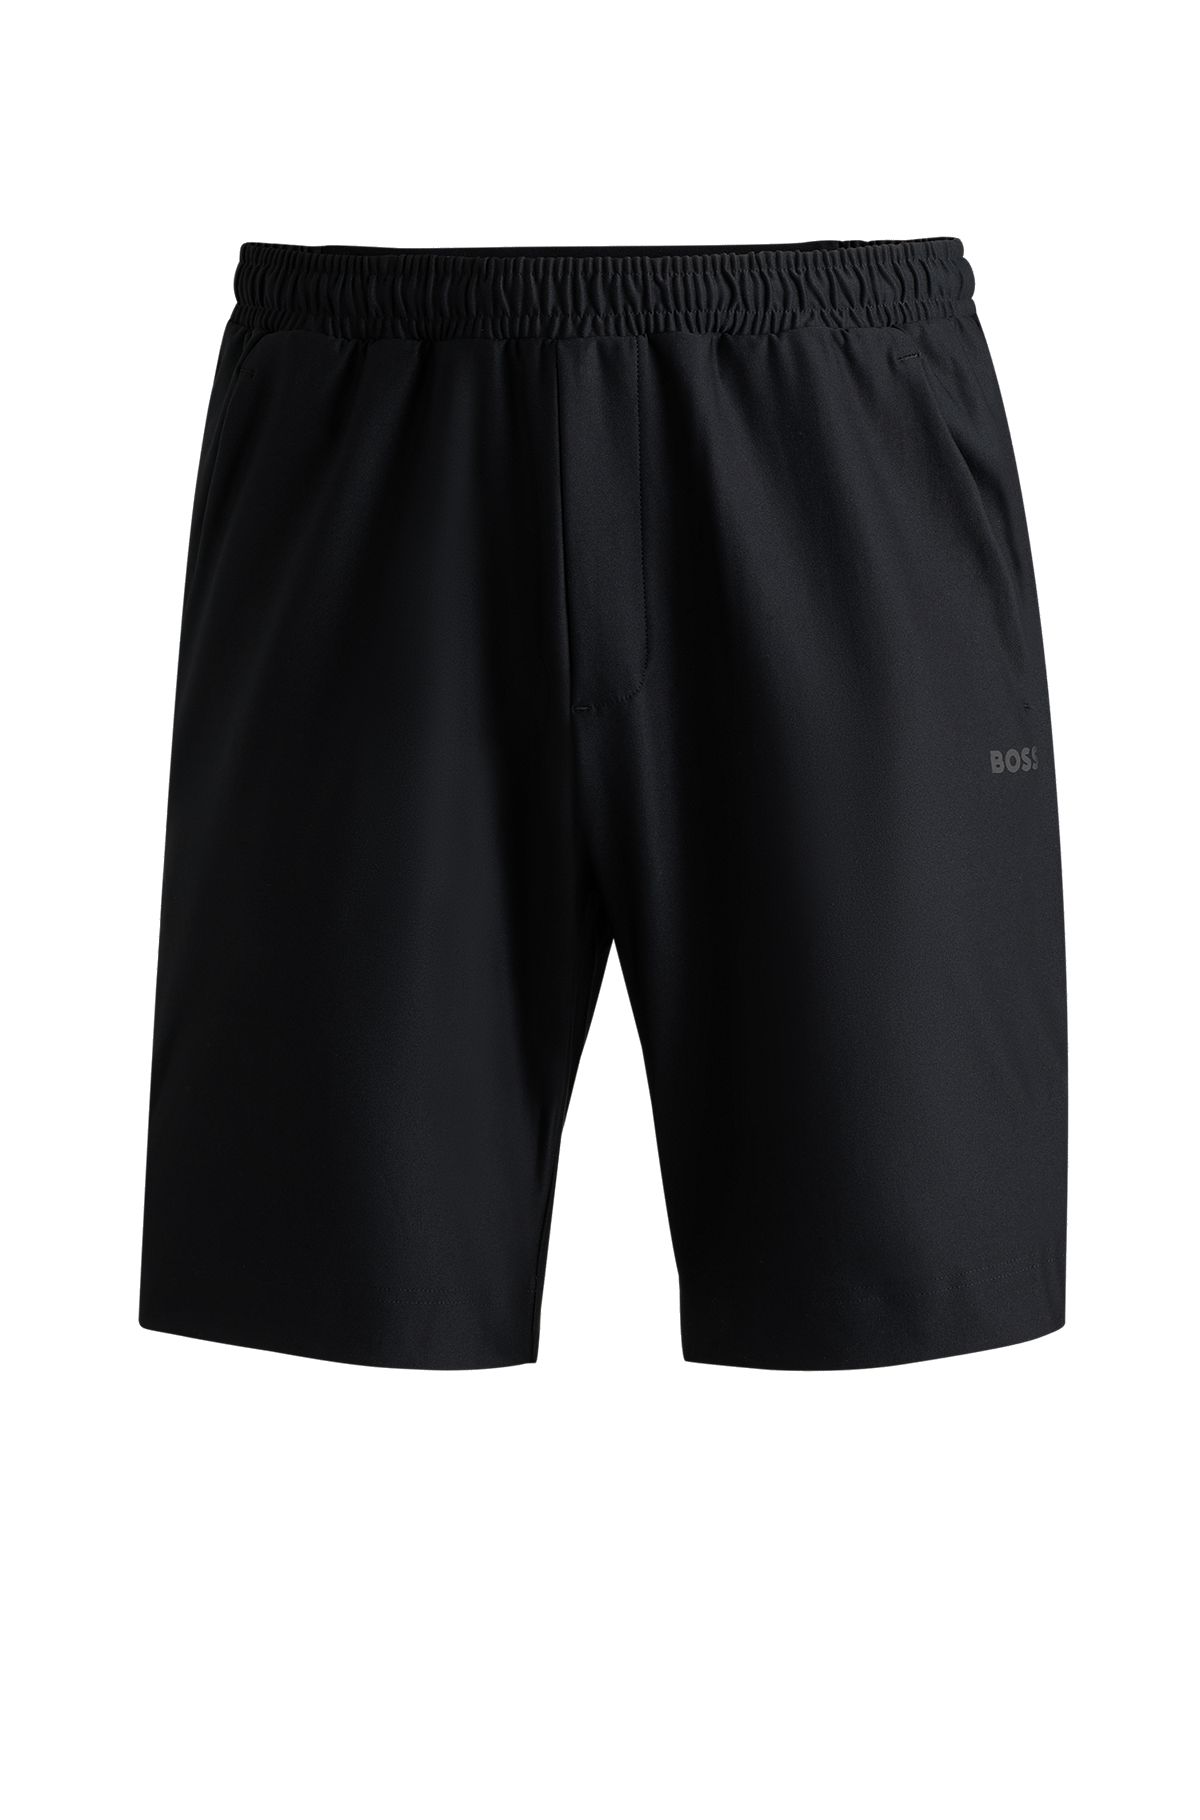 Shorts de secado rápido con logo reflectante decorativo, Negro